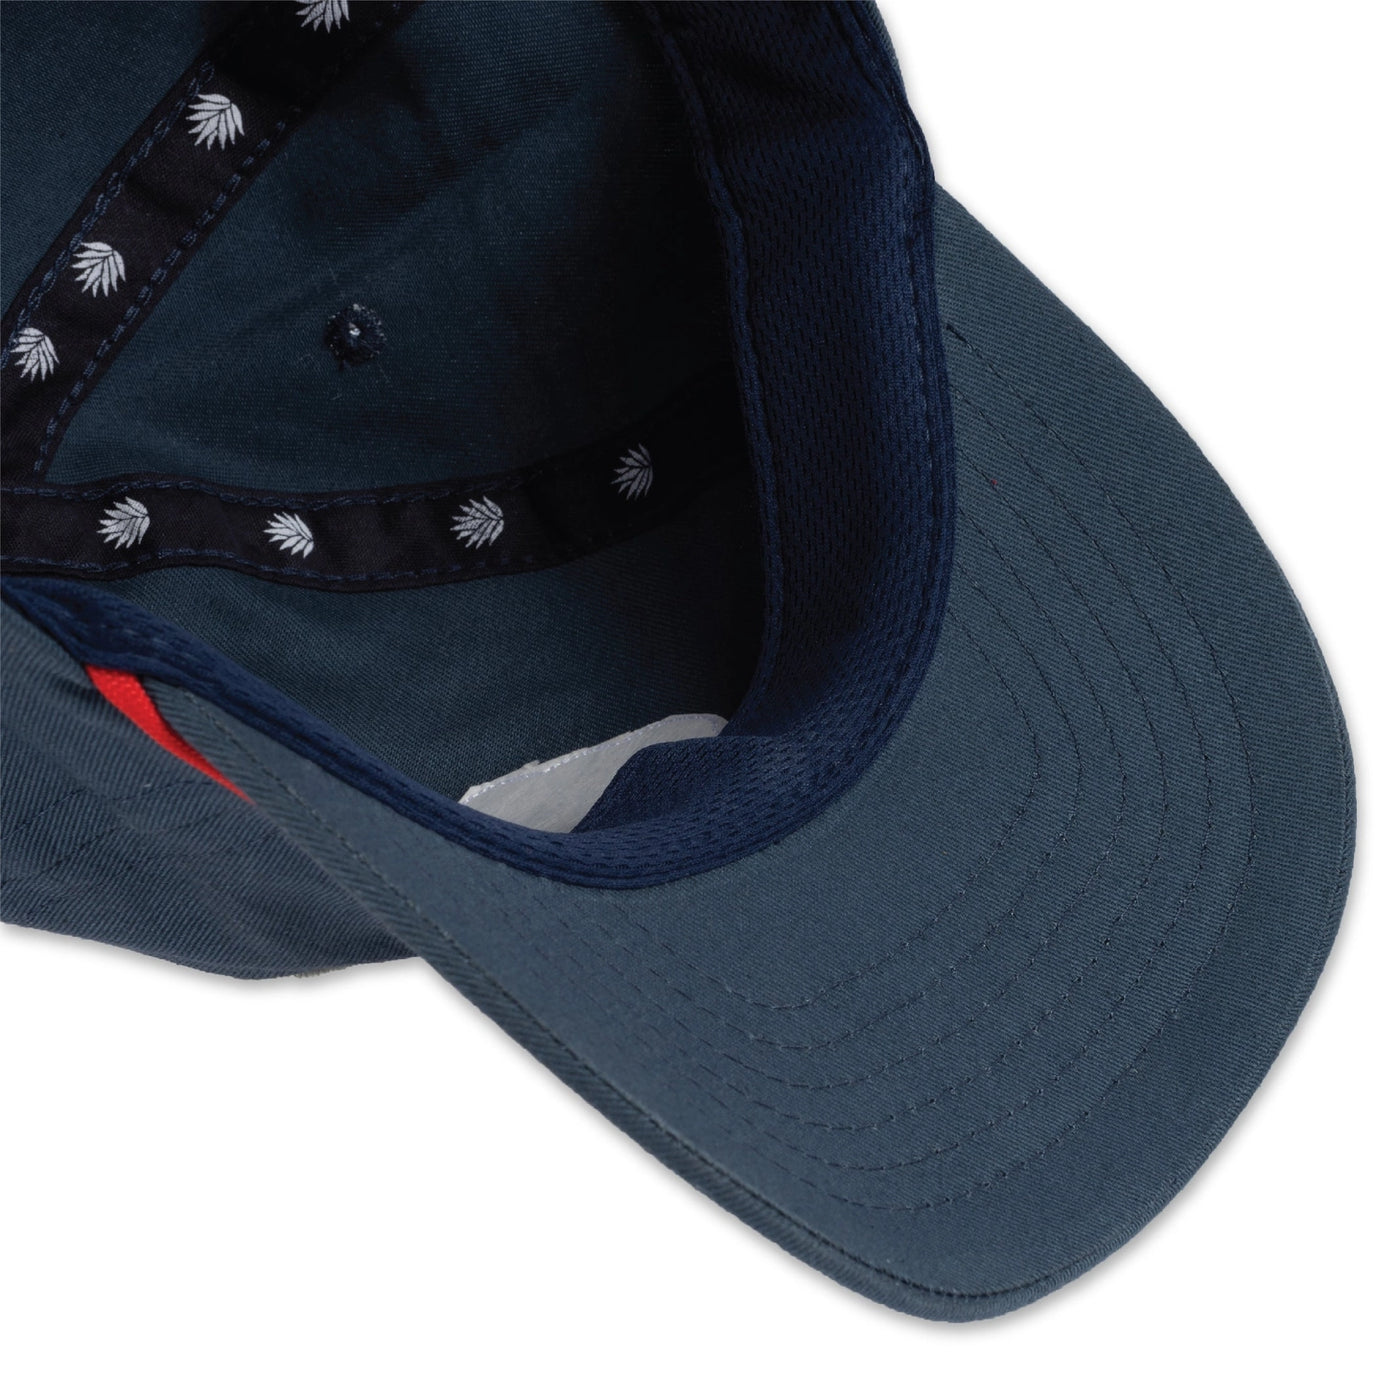 sendero: the ramblin' man hat